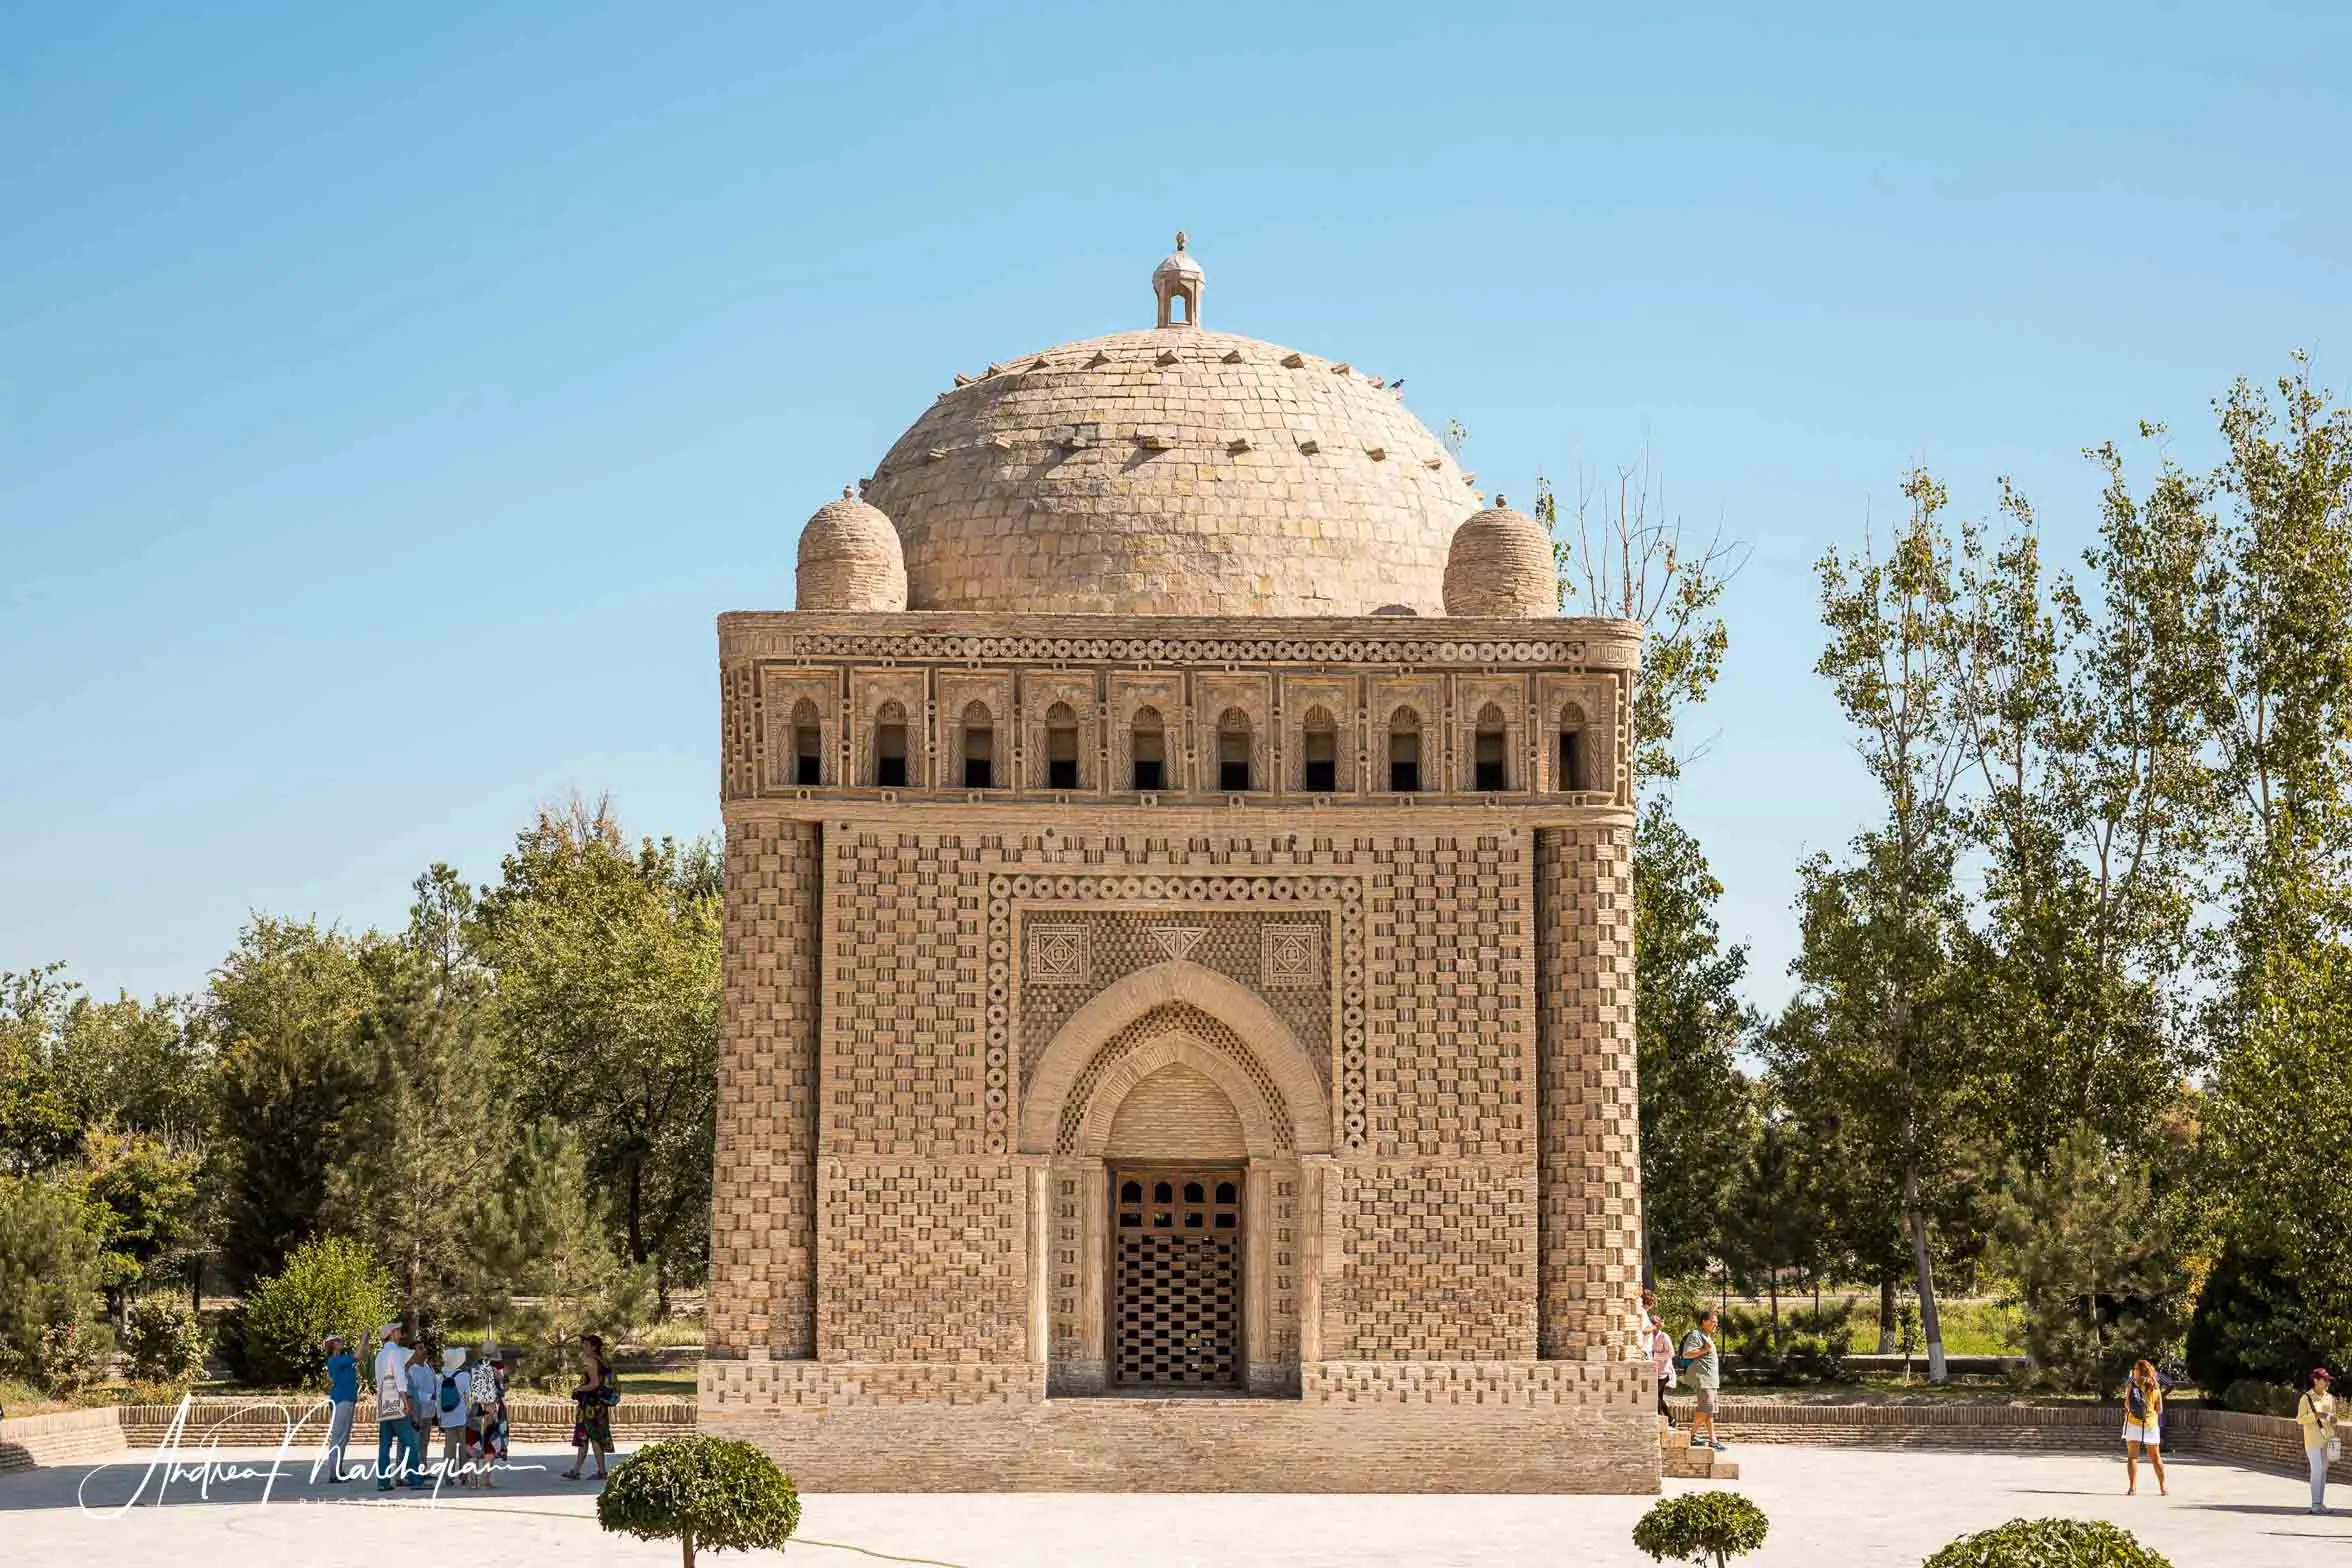 Ismail Samani mausoleum